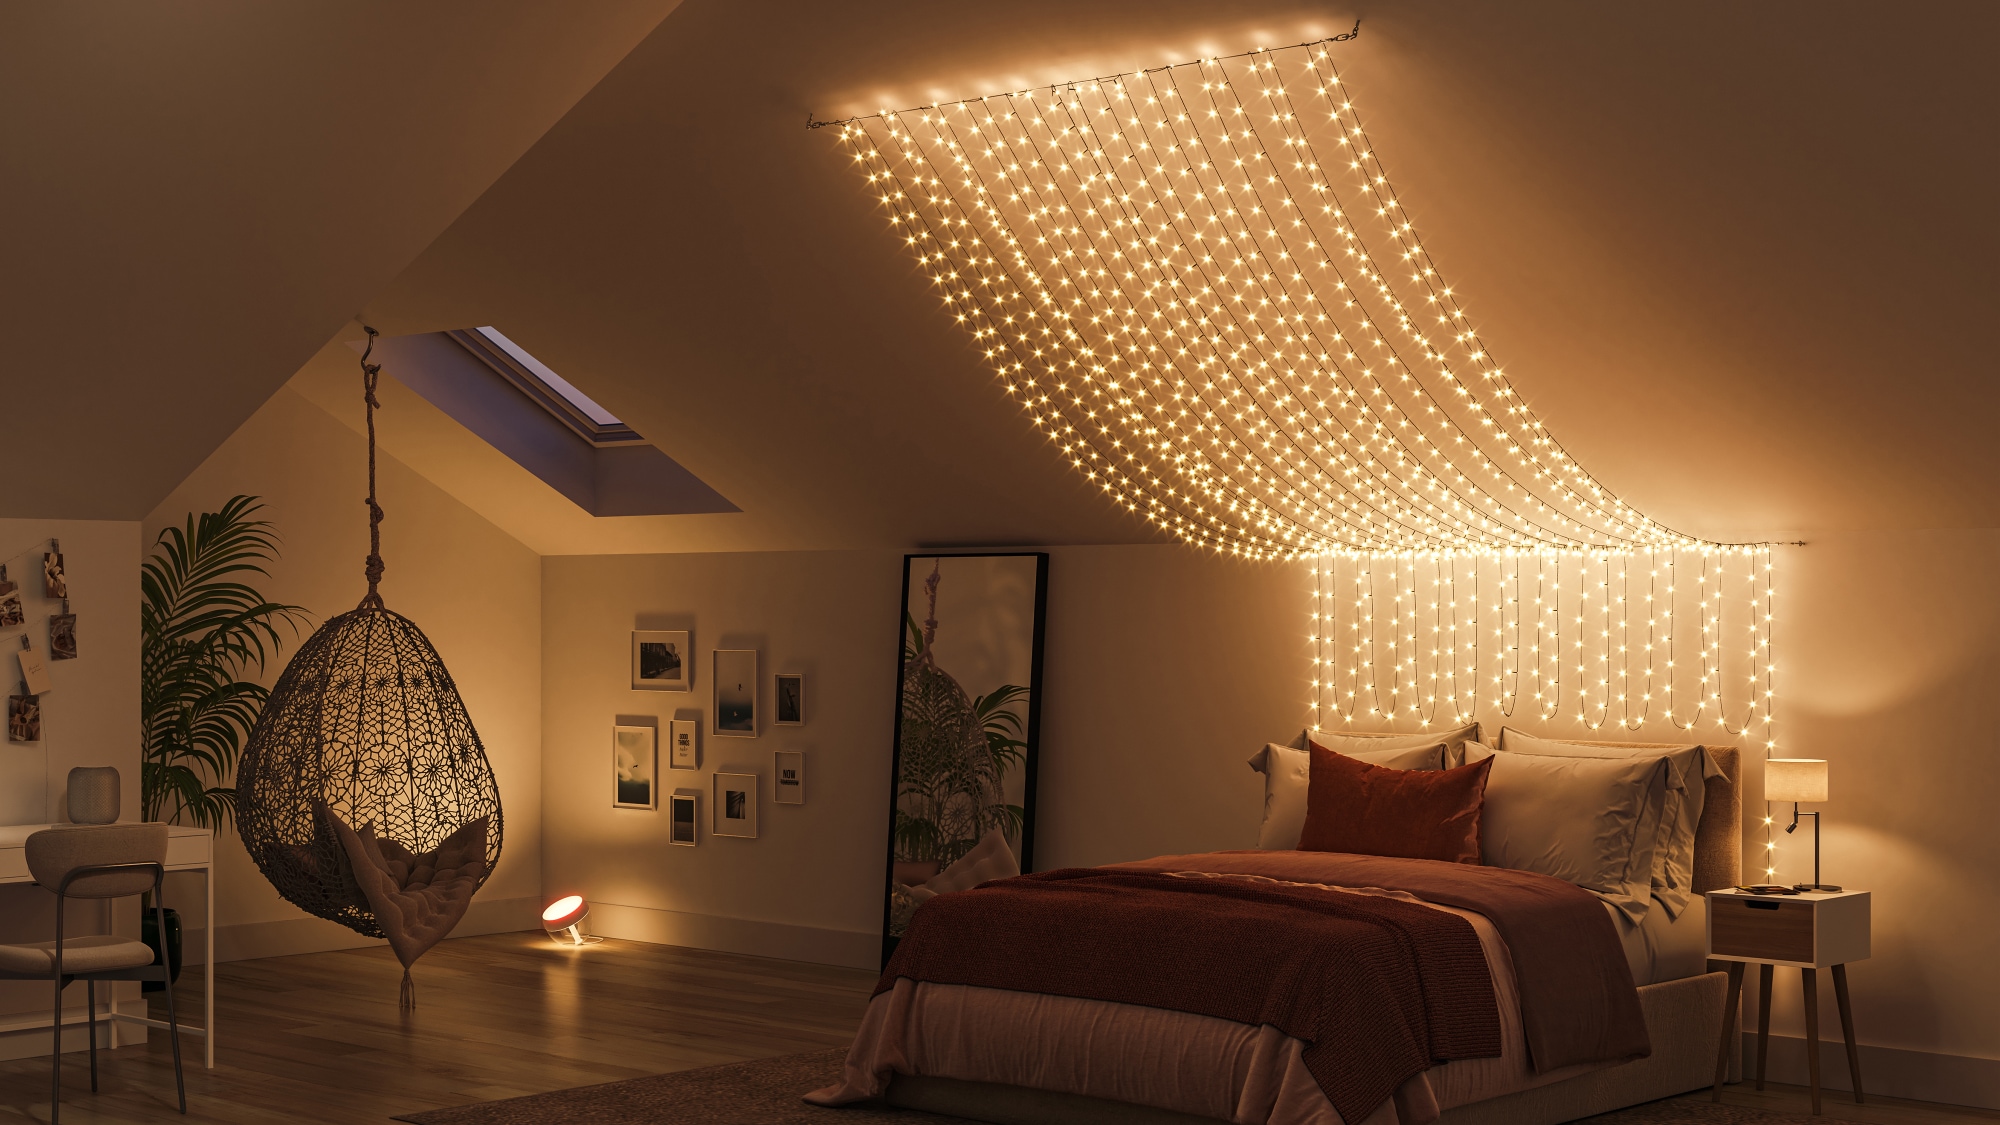 Inspiration for bedroom string lights